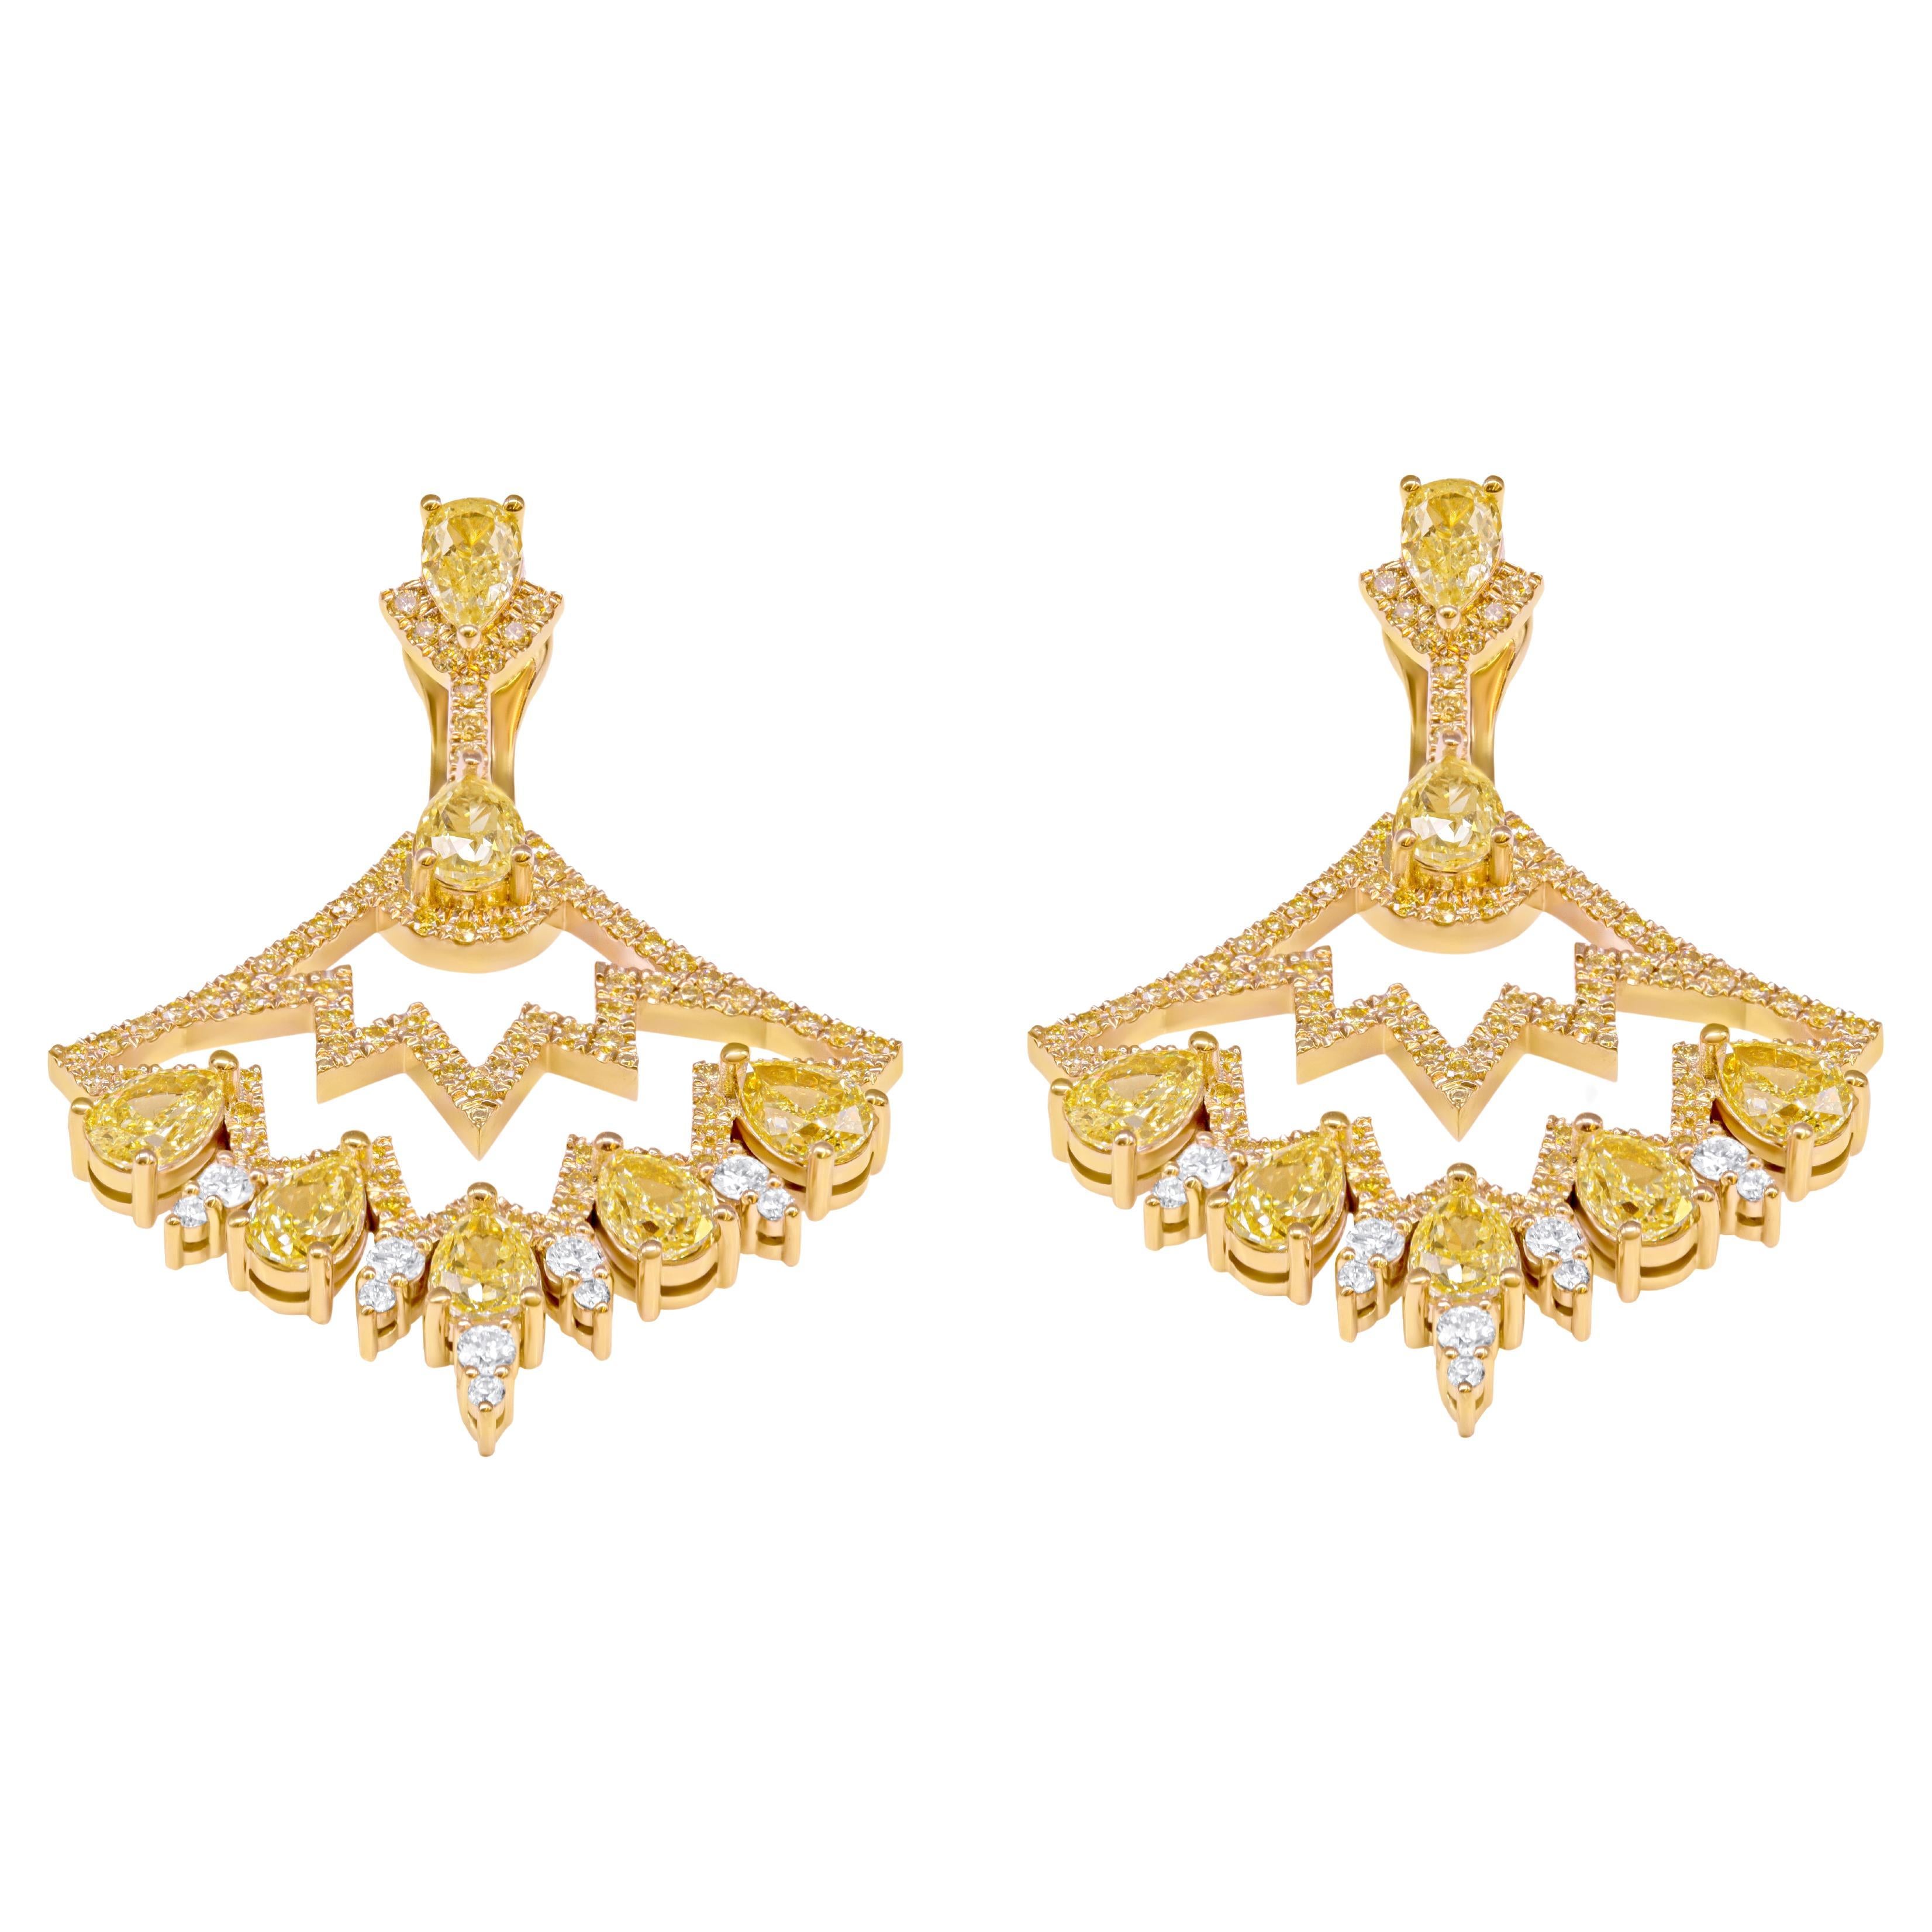 Whitingal présente notre collection exquise de boucles d'oreilles chandelier, fabriquées avec précision en or jaune 18 carats et en or blanc 18 carats. Ces superbes boucles d'oreilles présentent un total de 14 diamants jaunes fantaisie en forme de